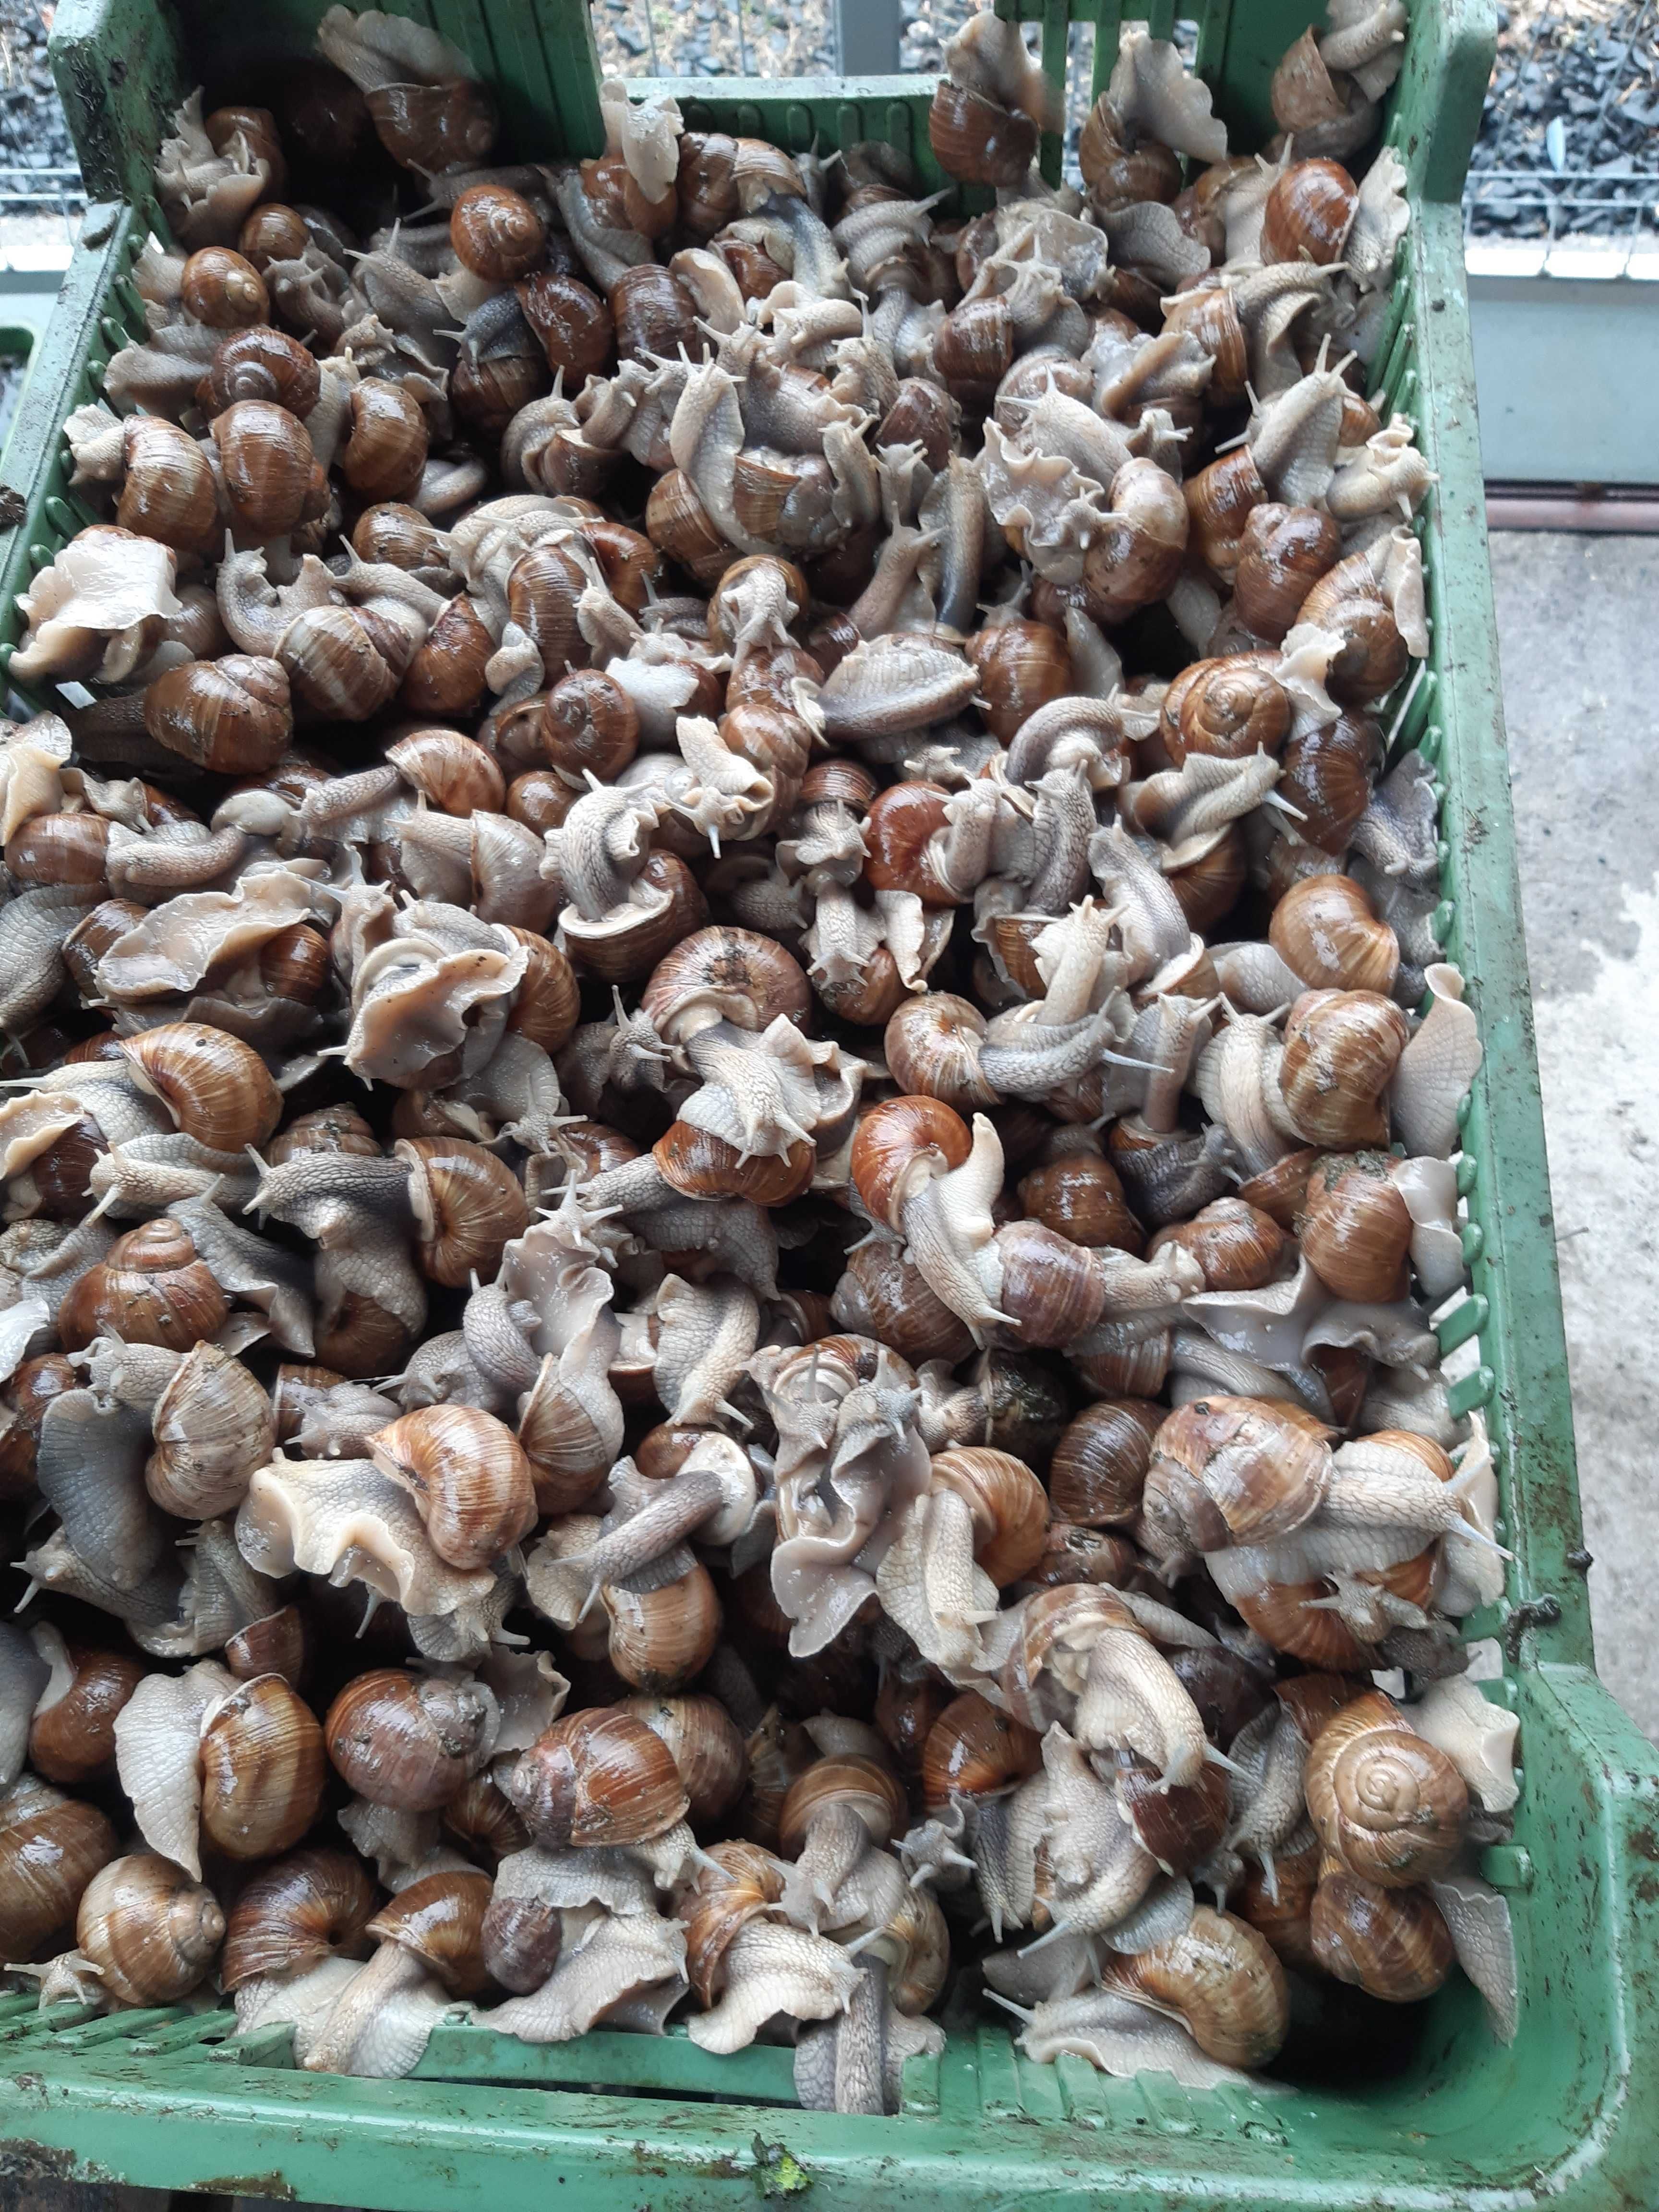 Skup ślimaków winniczków